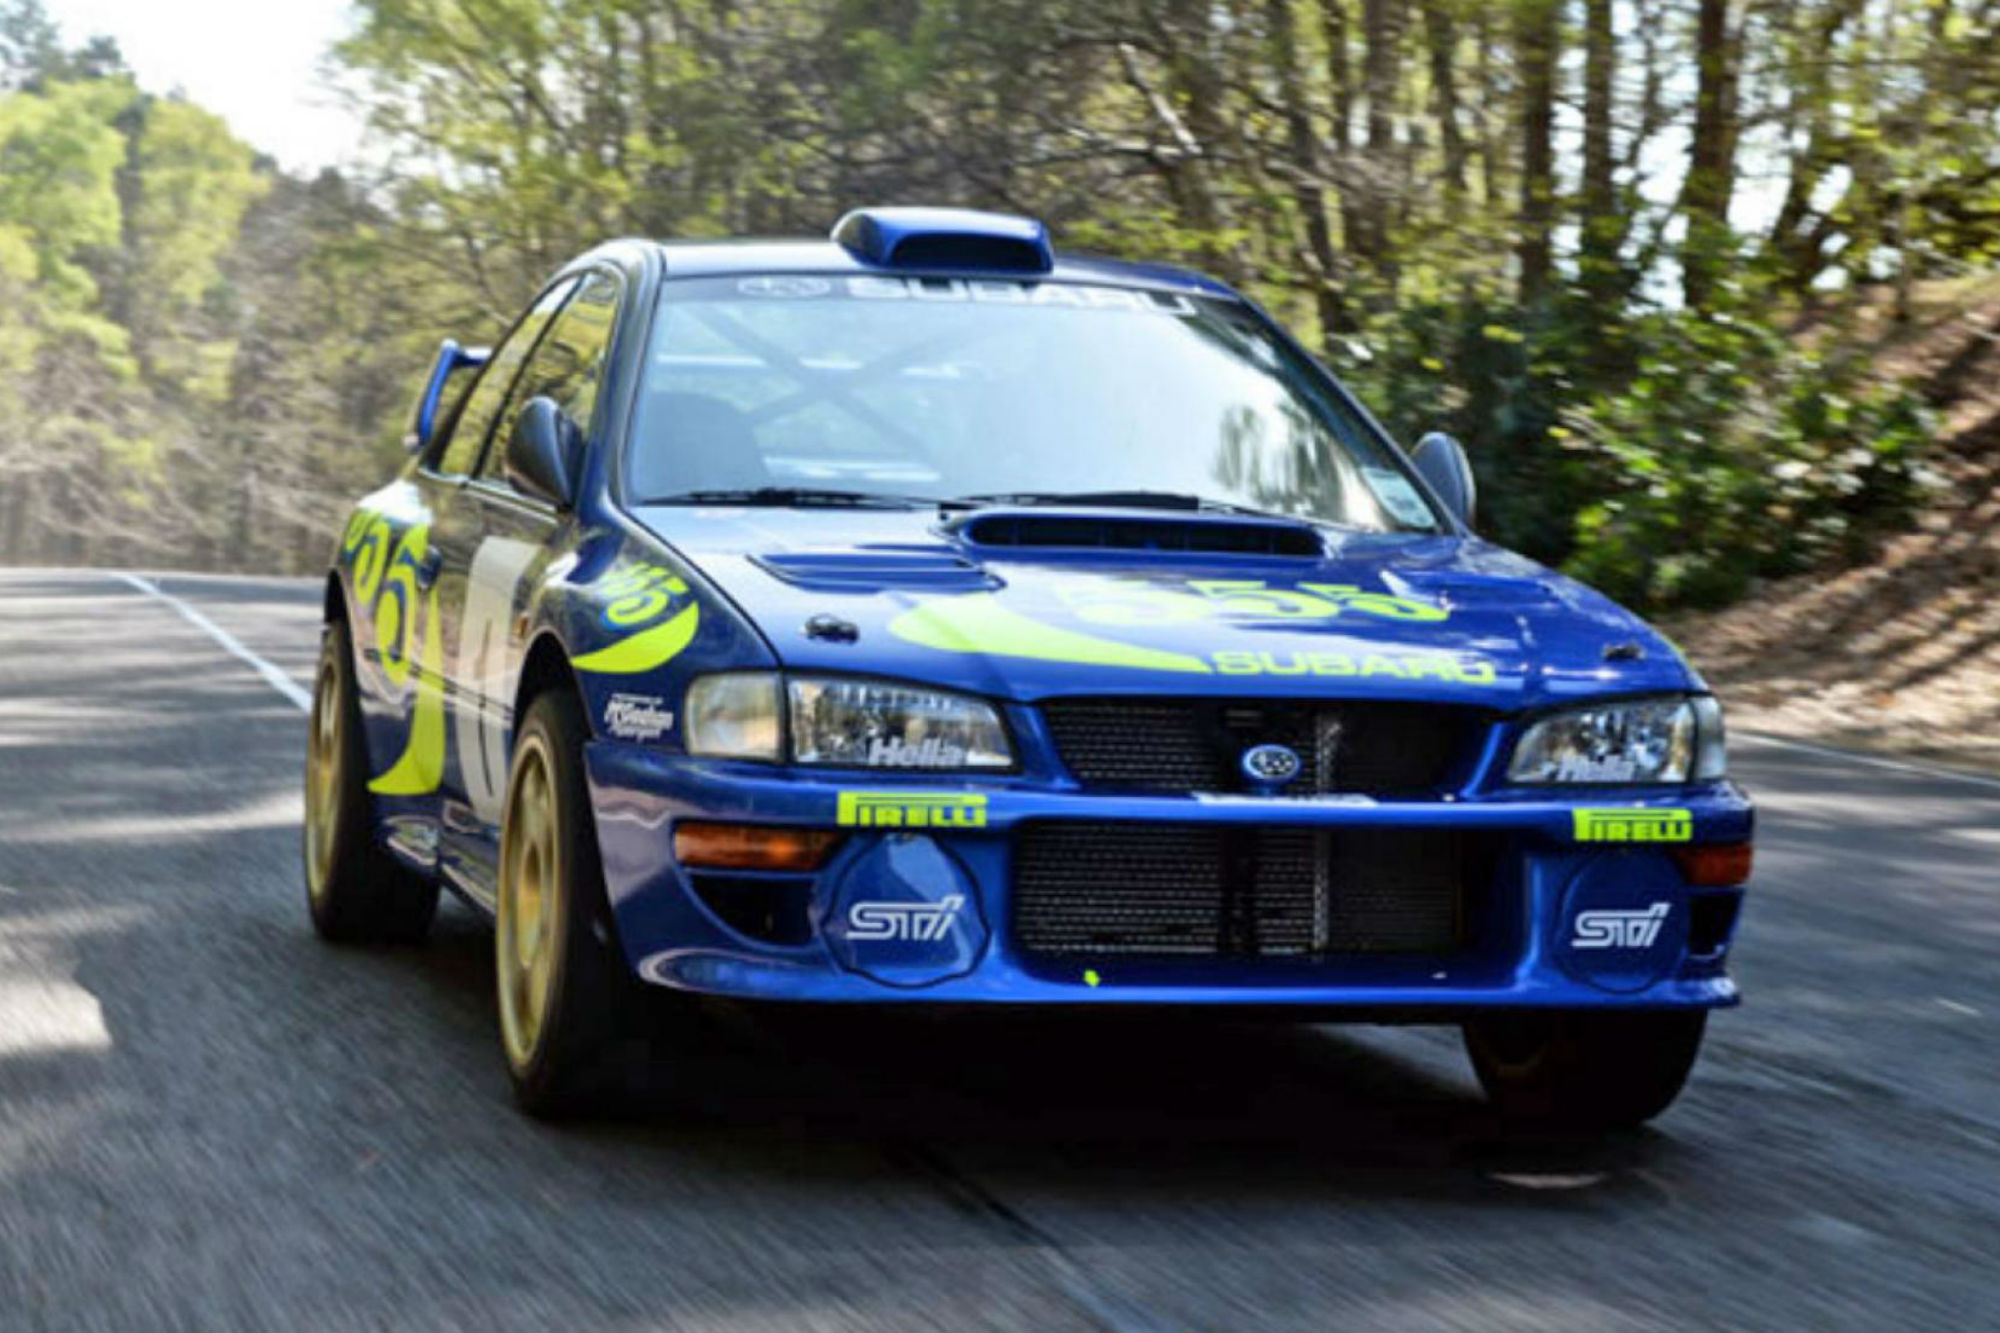 Colin McRae’s 1997 Subaru Impreza WRC sells for nearly £